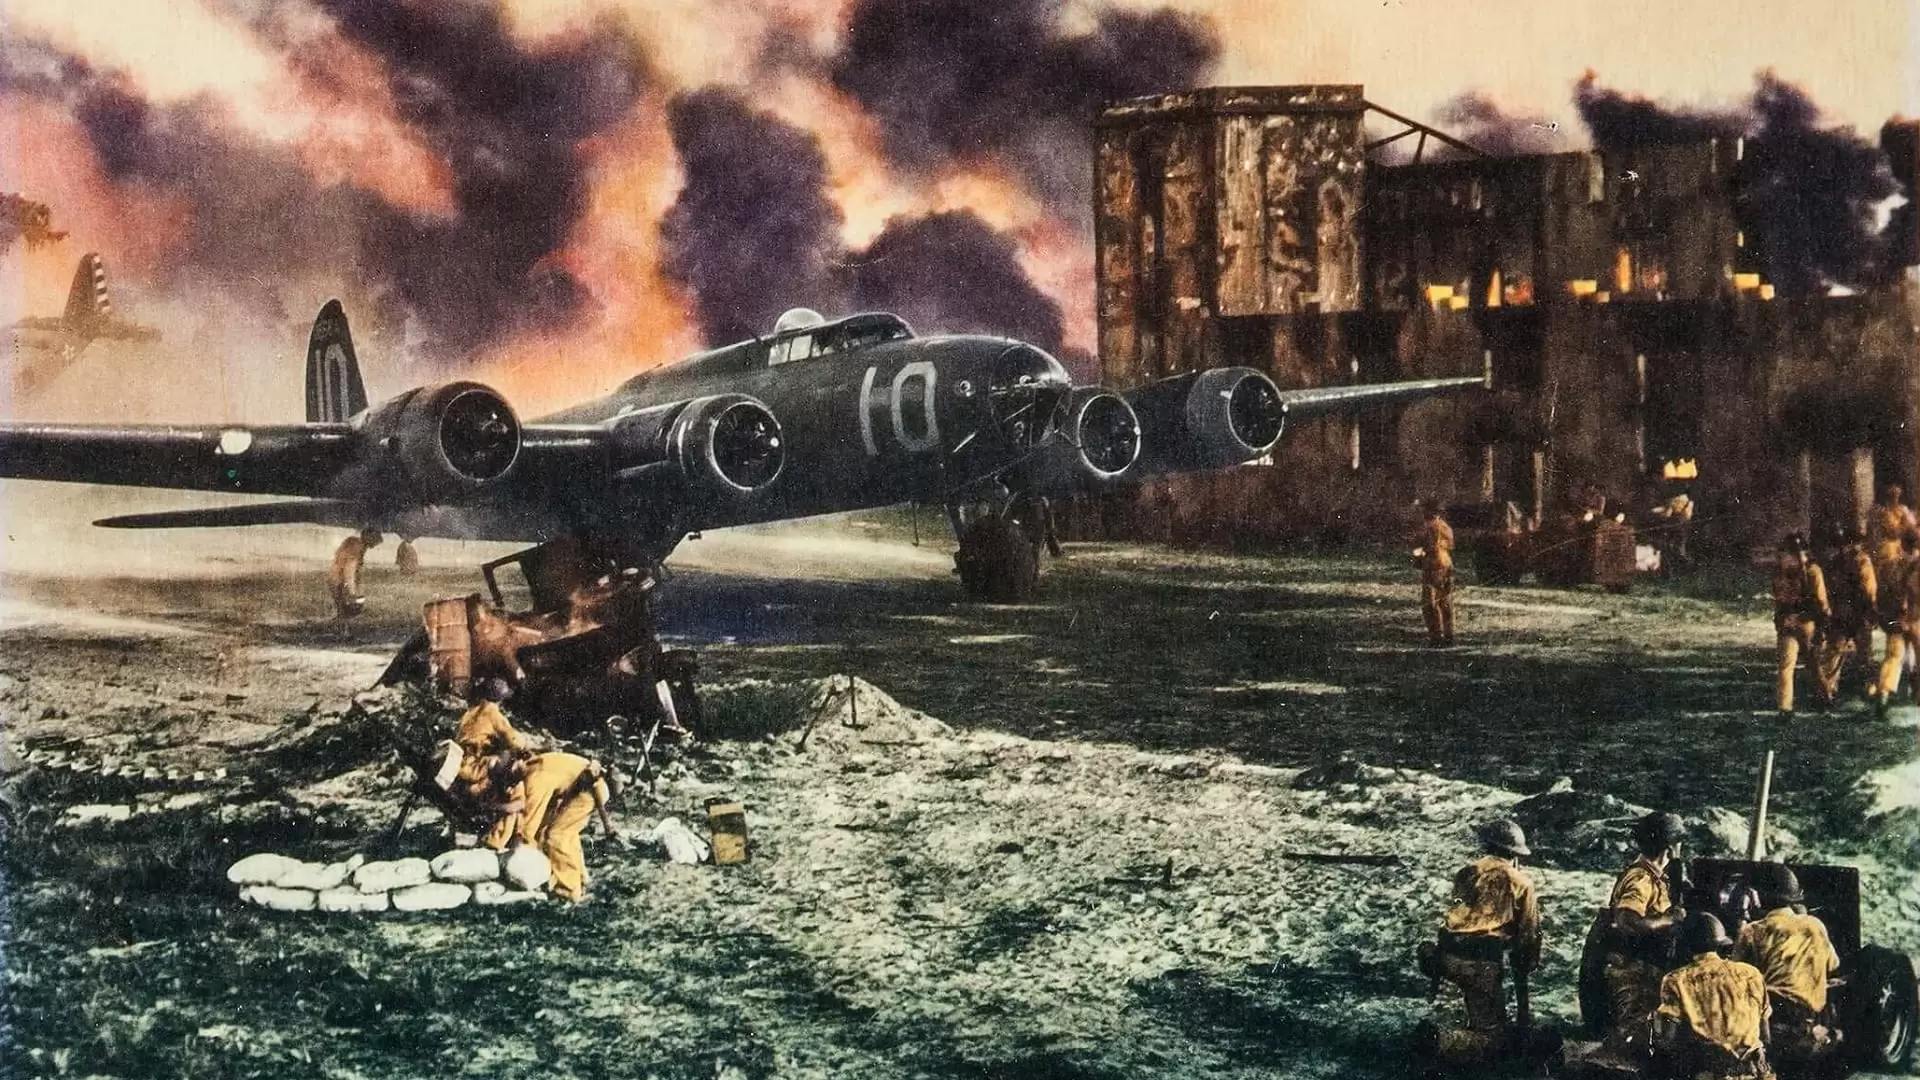 دانلود فیلم Air Force 1943 (نیروی هوایی)